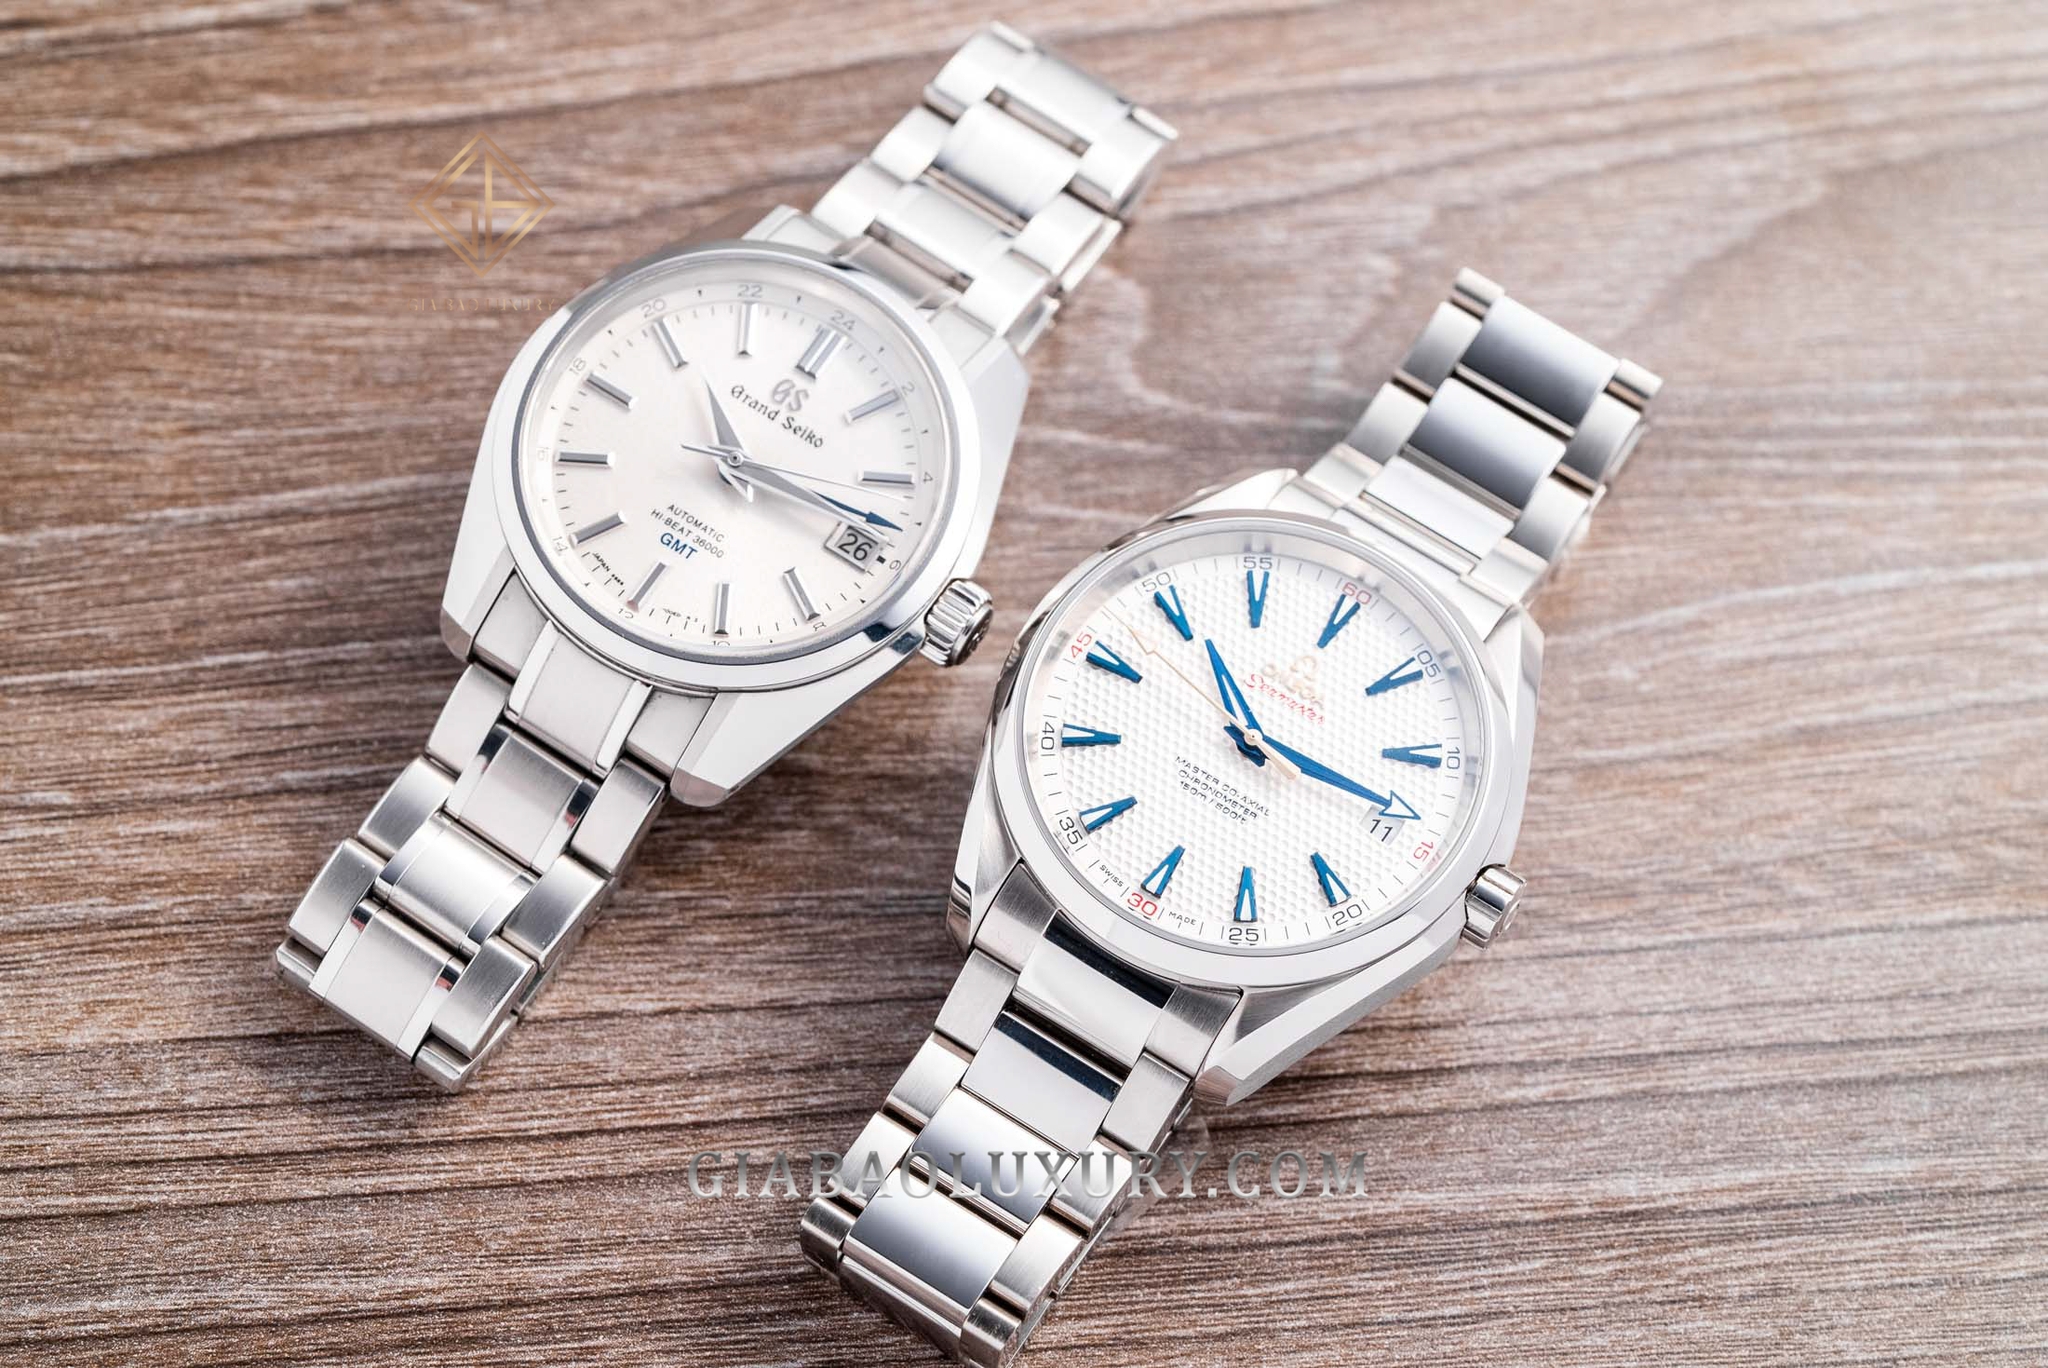 Lựa chọn đồng hồ để đeo hàng ngày: Omega Aqua Terra hay Grand Seiko  Heritage Hi-Beat?